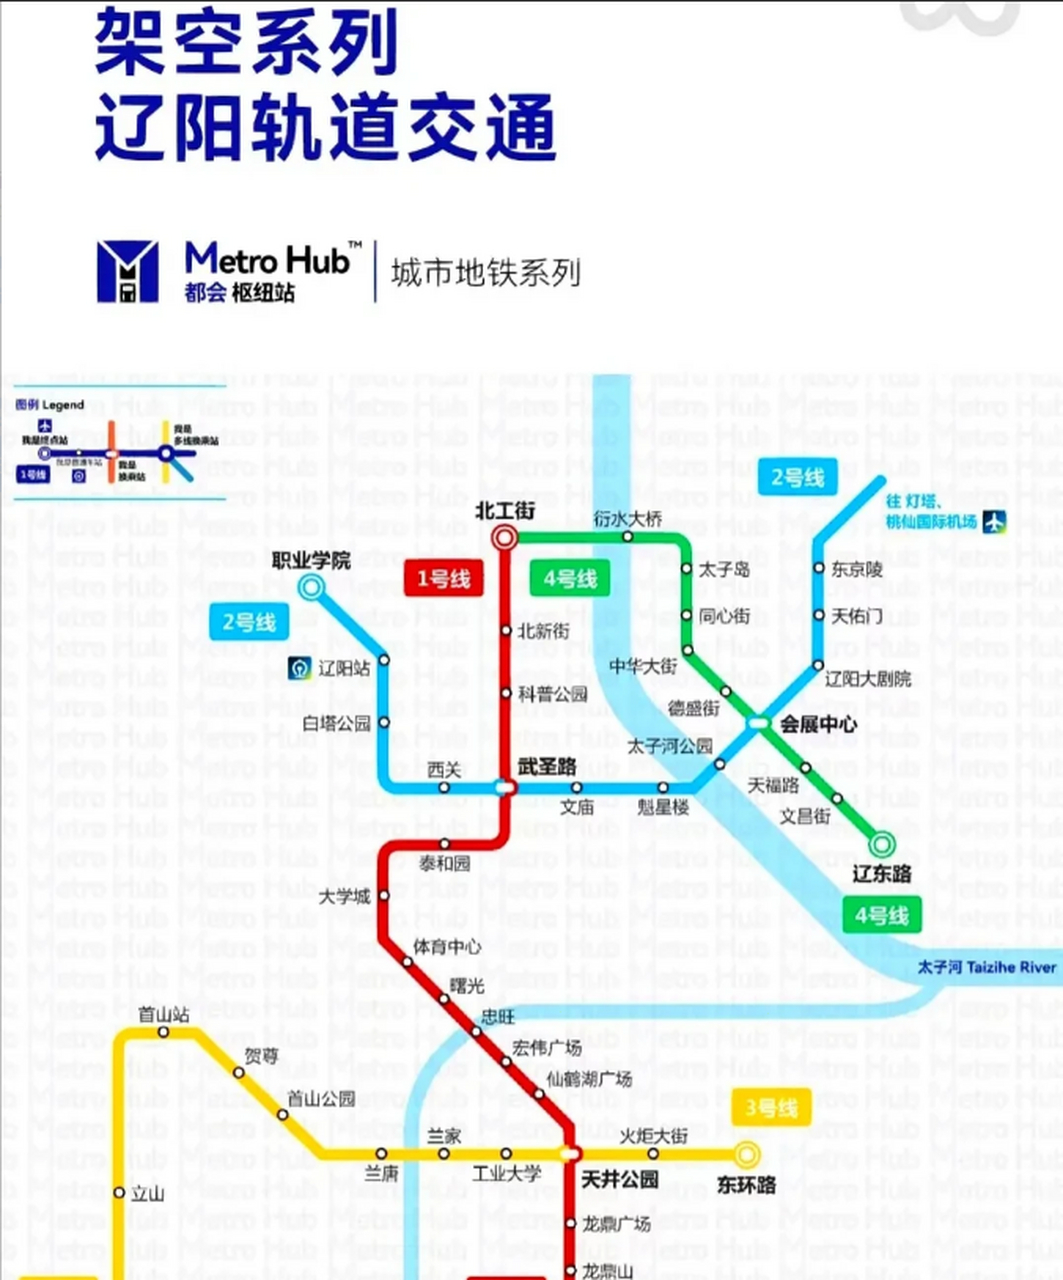 南部连接鞍山立山区,期待能够早日建成,让辽宁省有更多城市拥有地铁